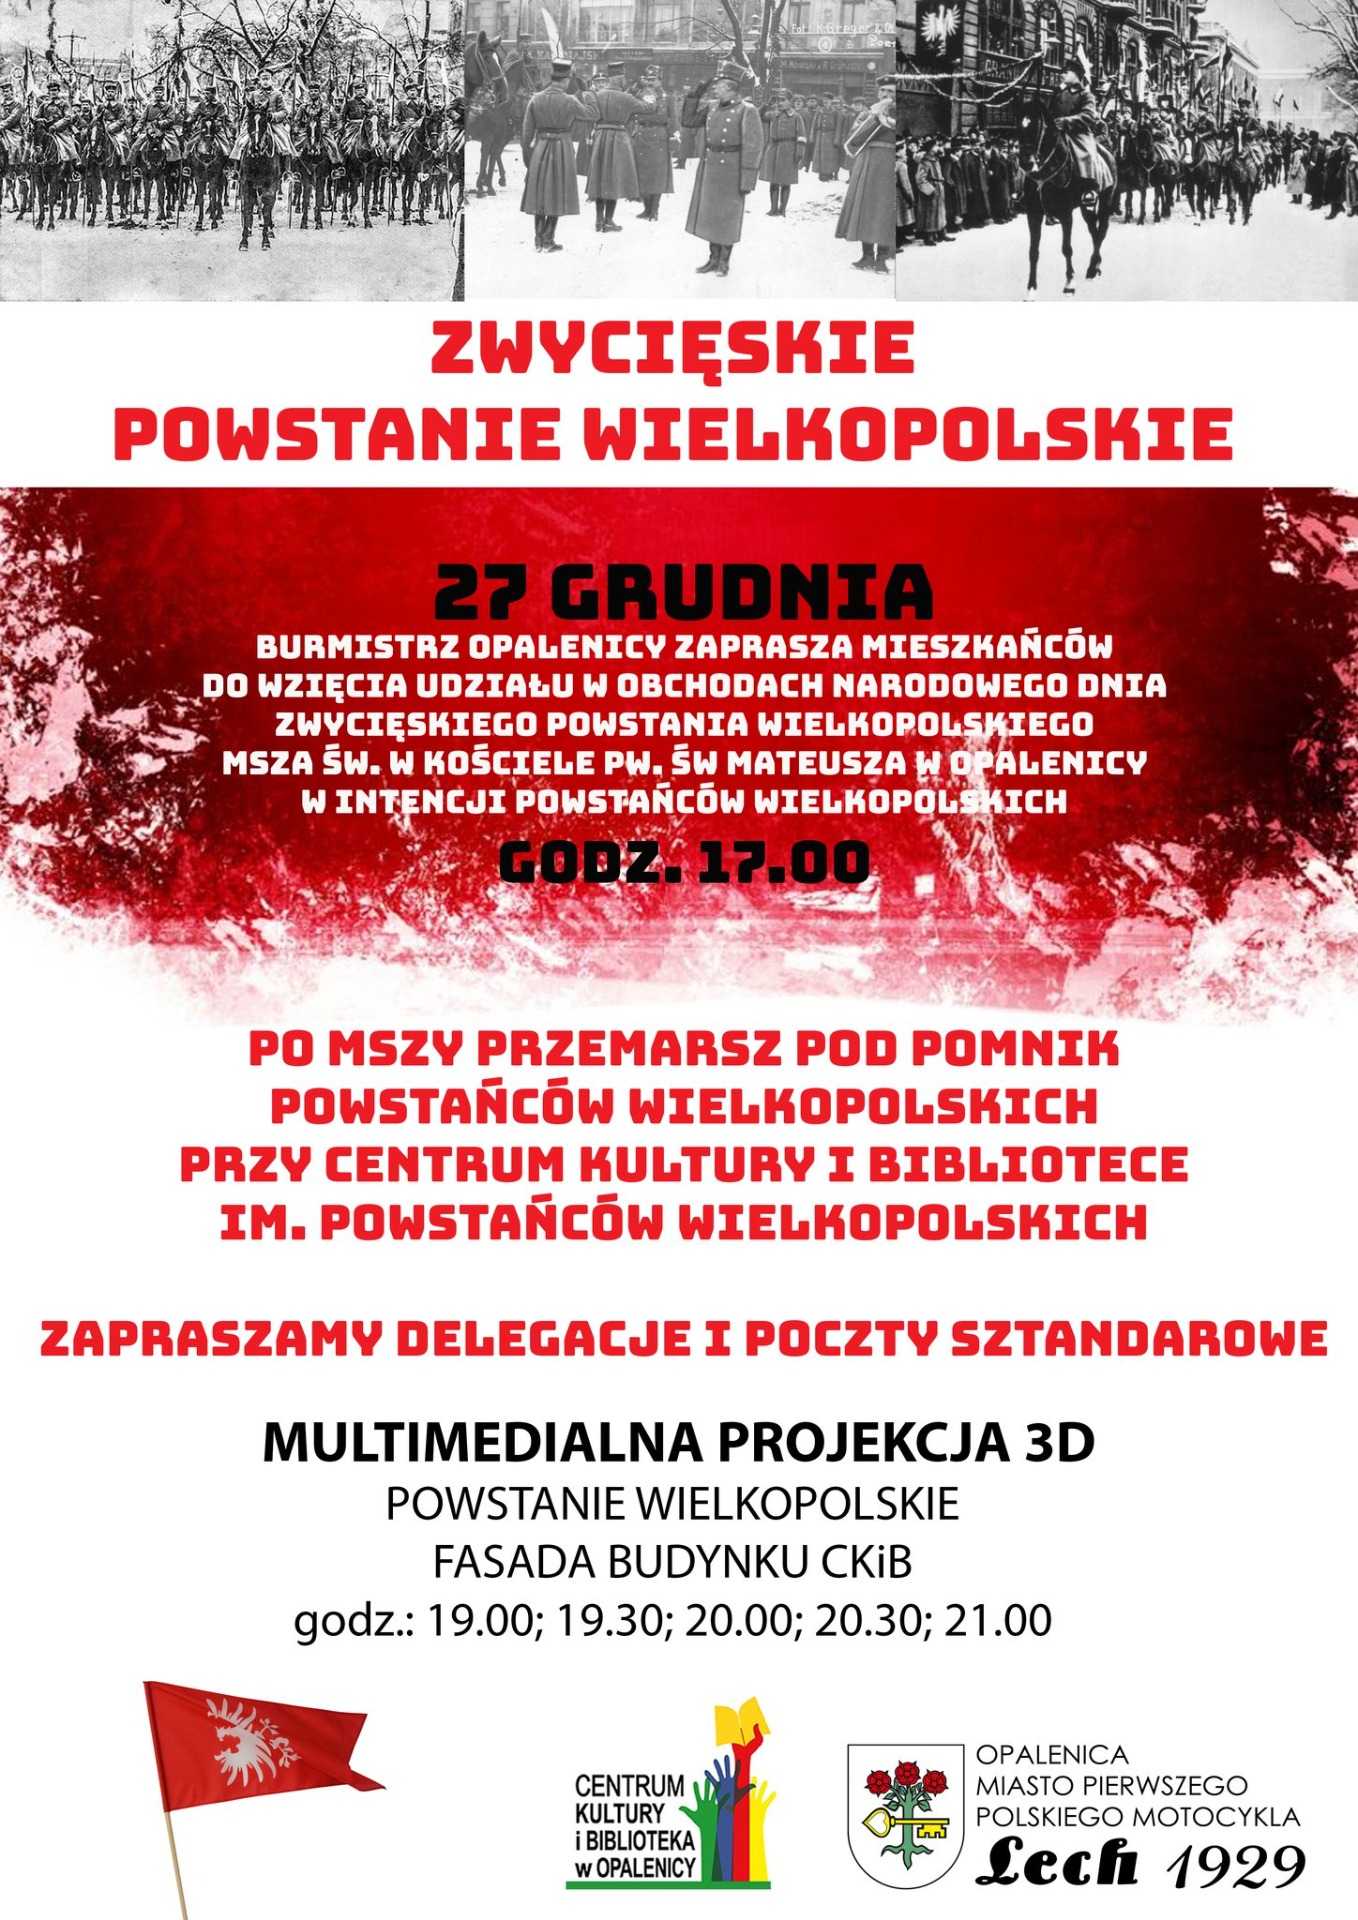 Obchody Narodowe Dnia Zwycięskiego Powstania Wielkopolskiego w Opalenicy - Obrazek 1